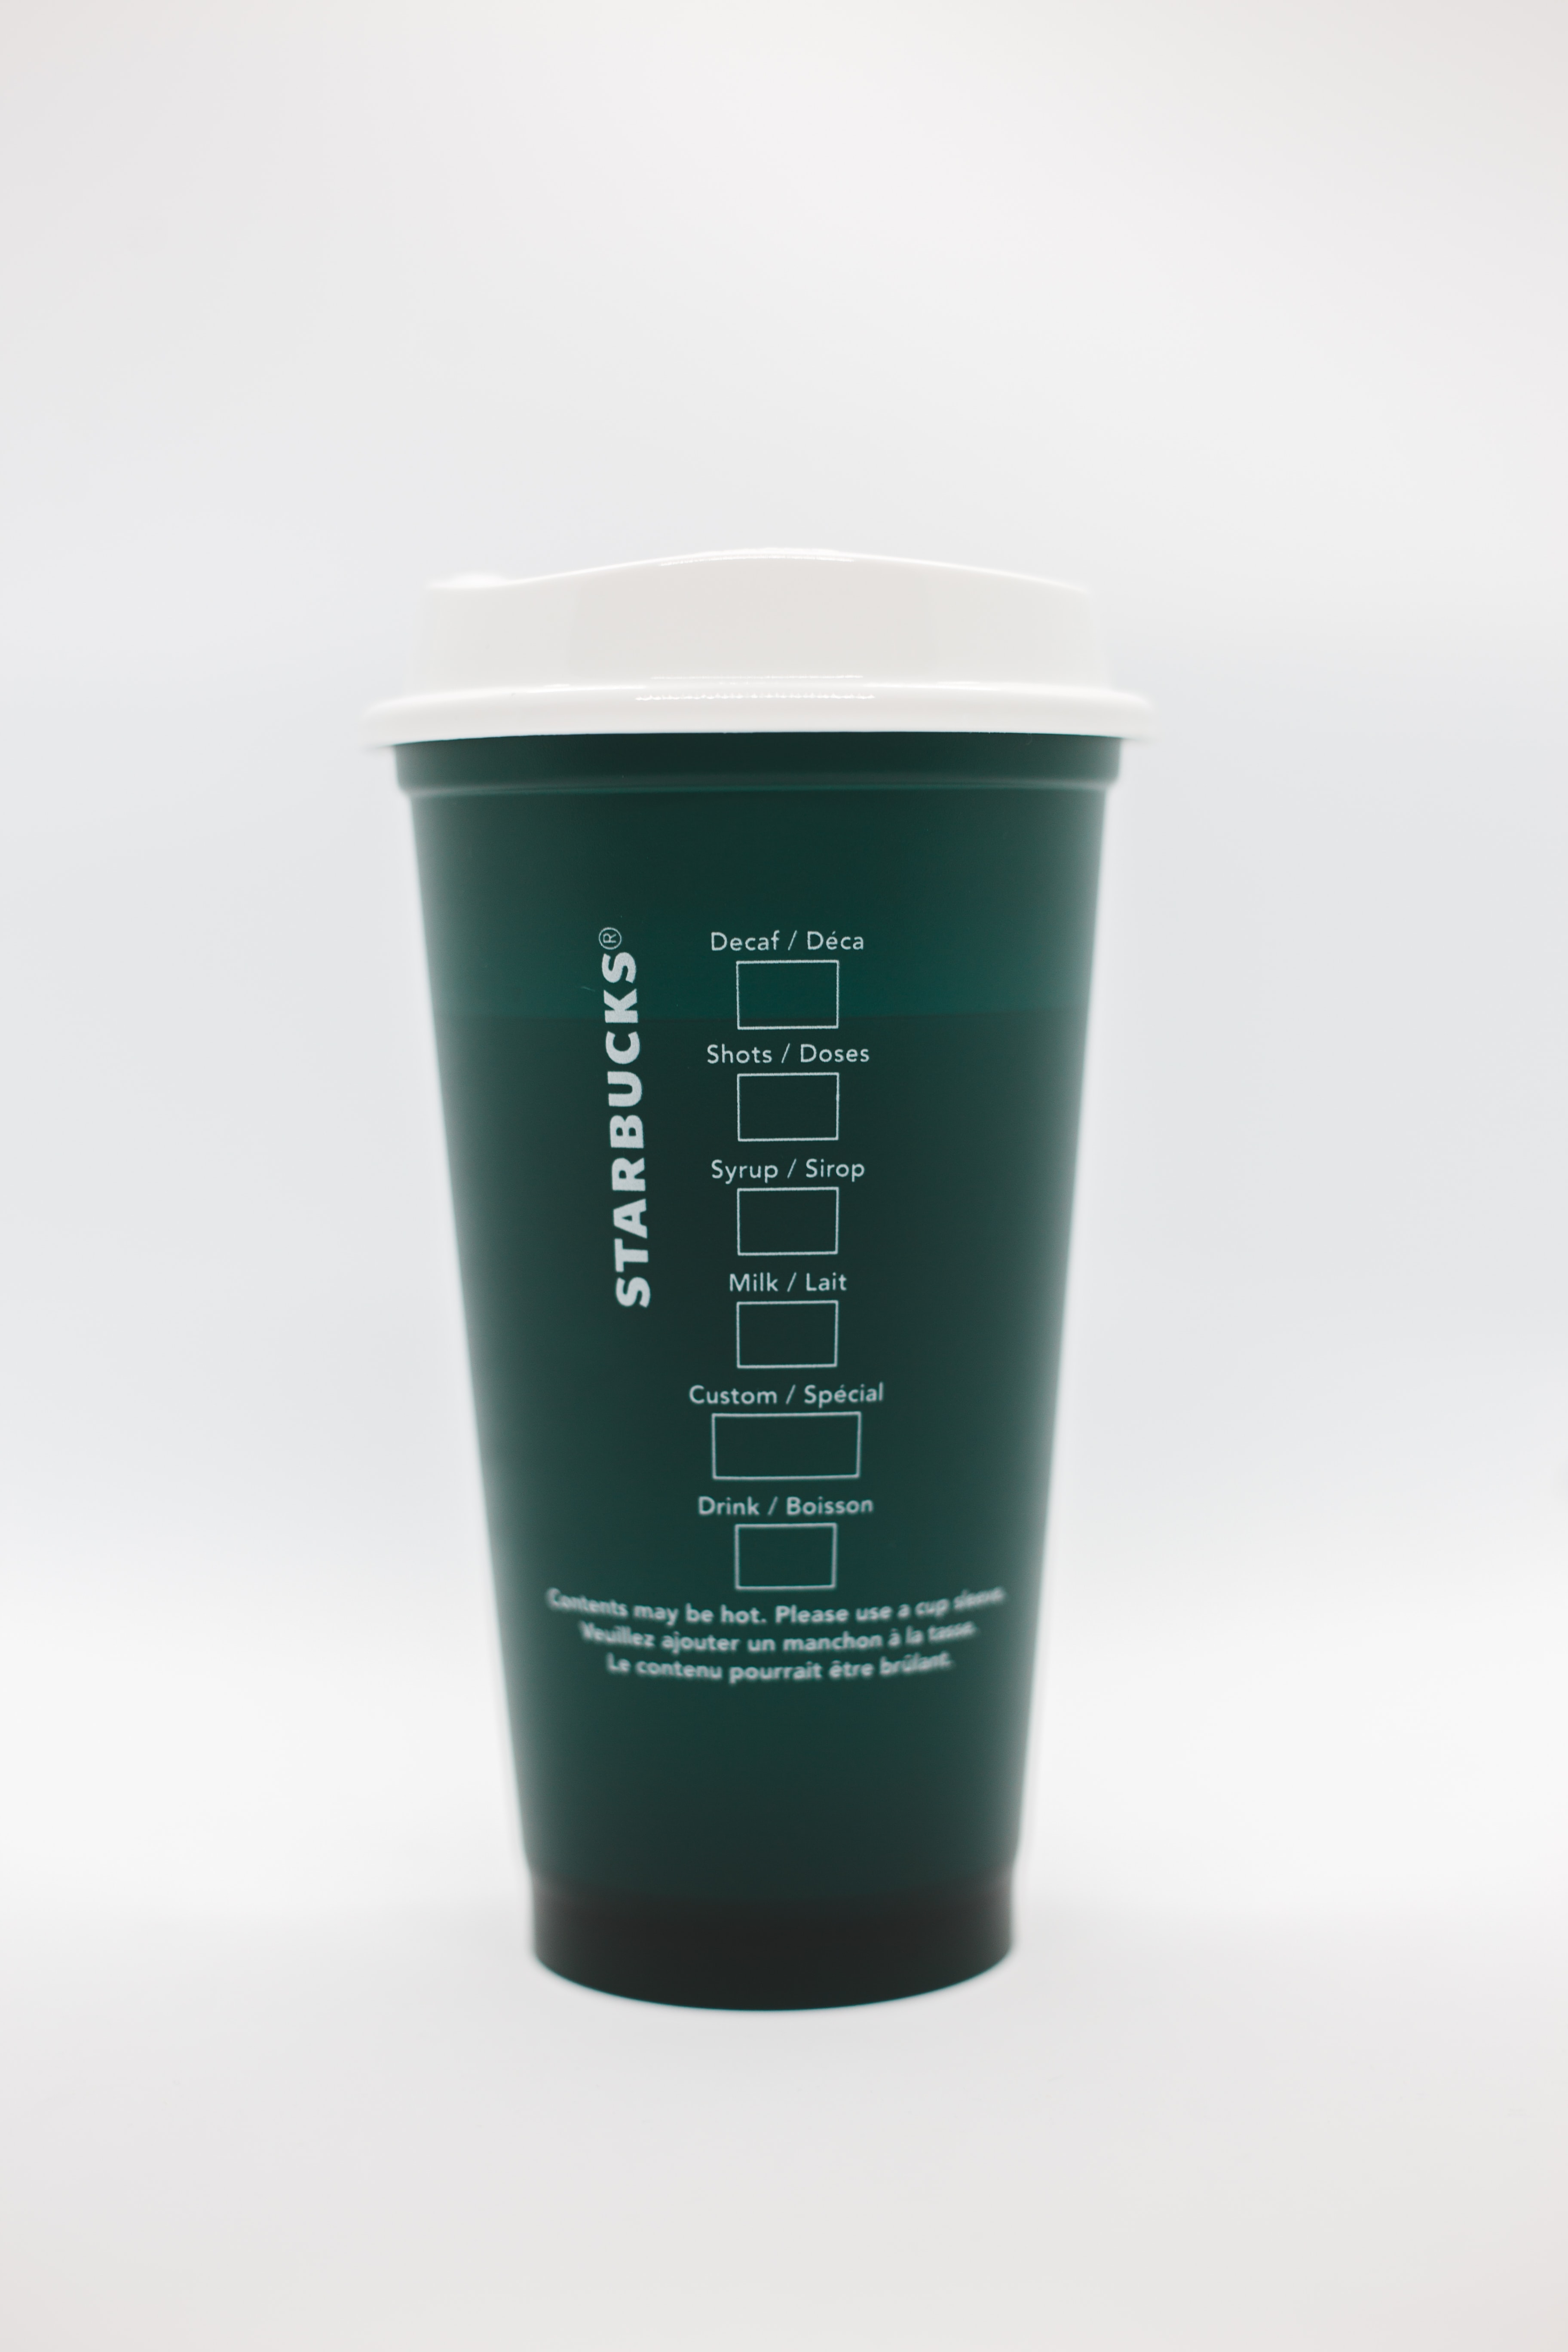 Starbucks cup showing kanban